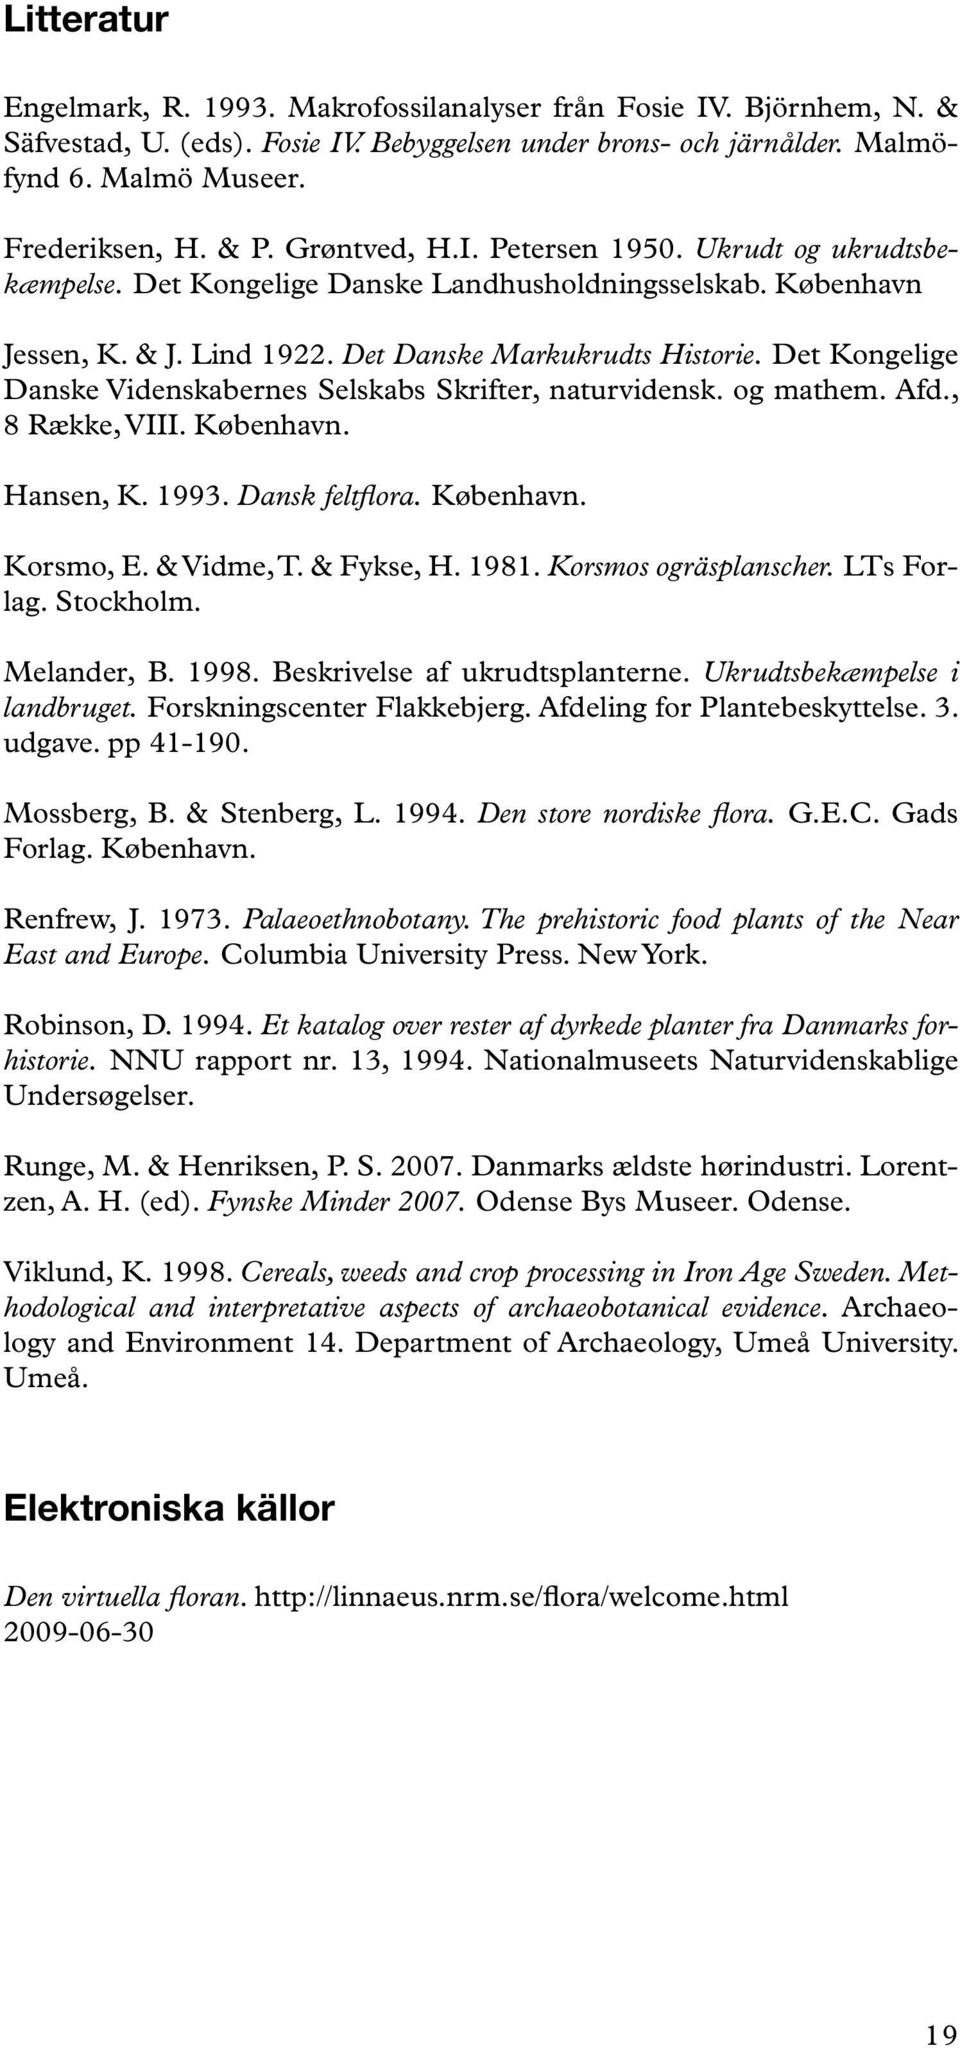 Det Kongelige Danske Videnskabernes Selskabs Skrifter, naturvidensk. og mathem. Afd., 8 Række, VIII. København. Hansen, K. 1993. Dansk feltflora. København. Korsmo, E. & Vidme, T. & Fykse, H. 1981.